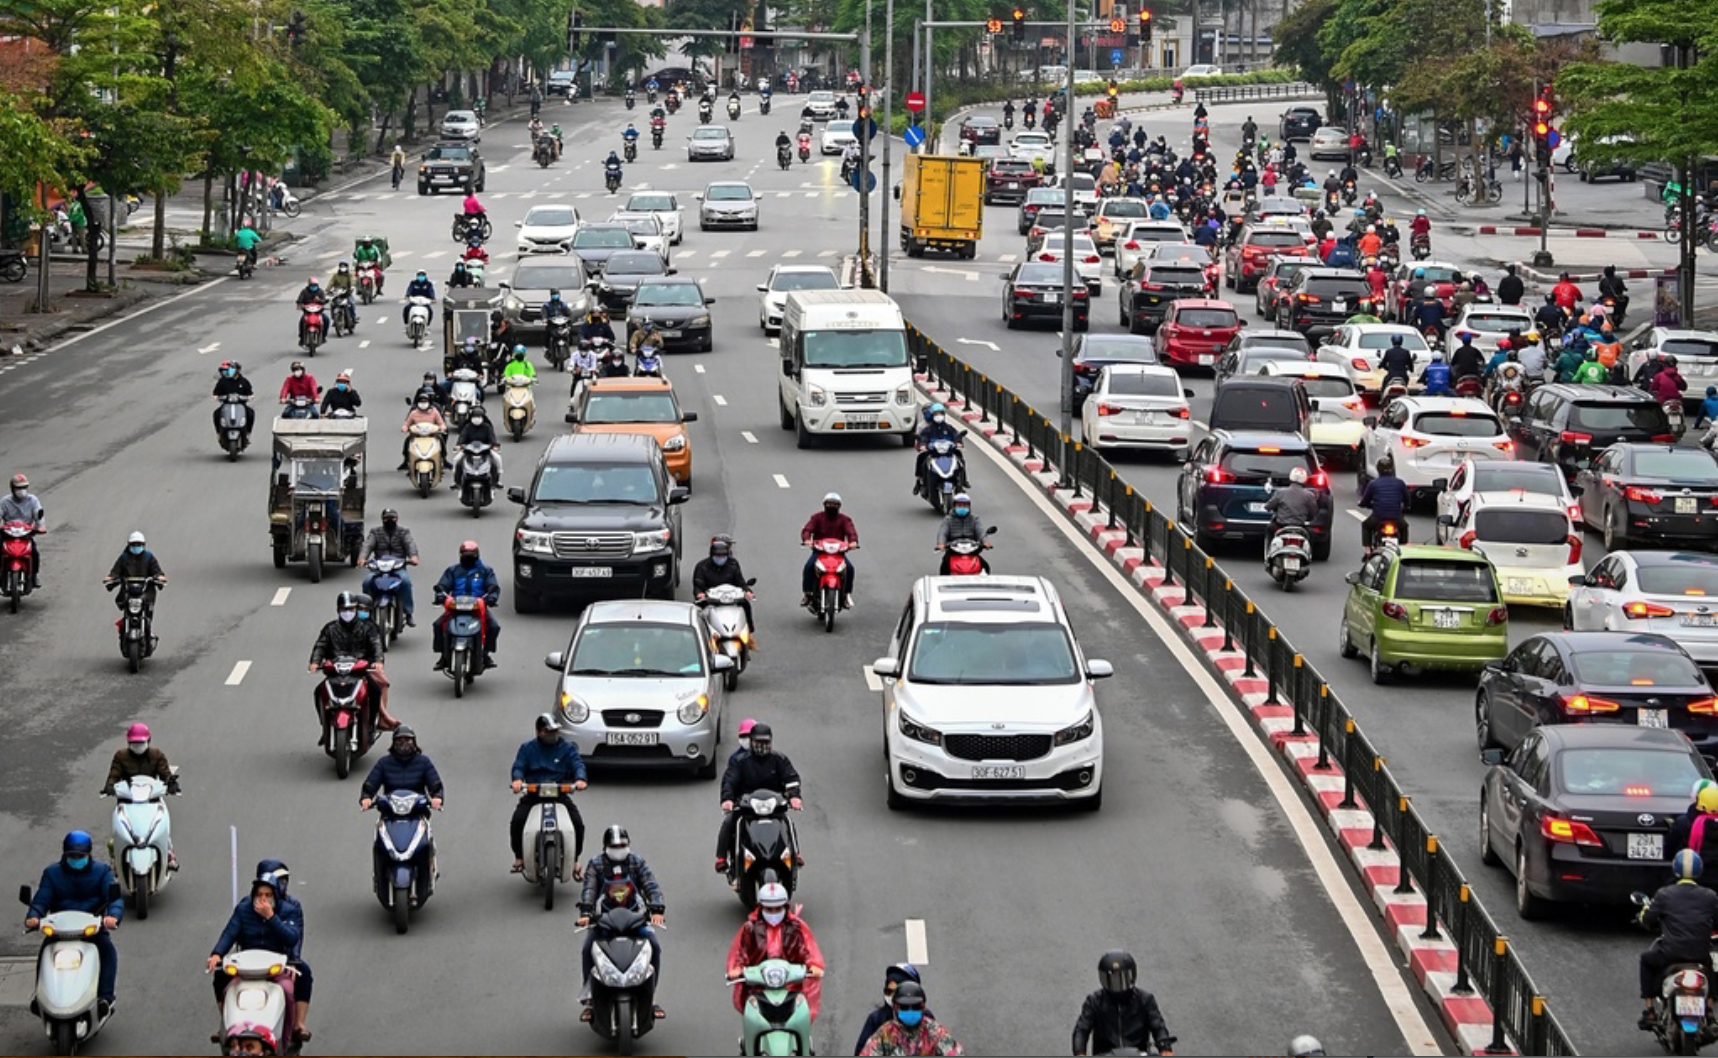 Quản lý giao thông vận tải thông minh trong đô thị hiện đại